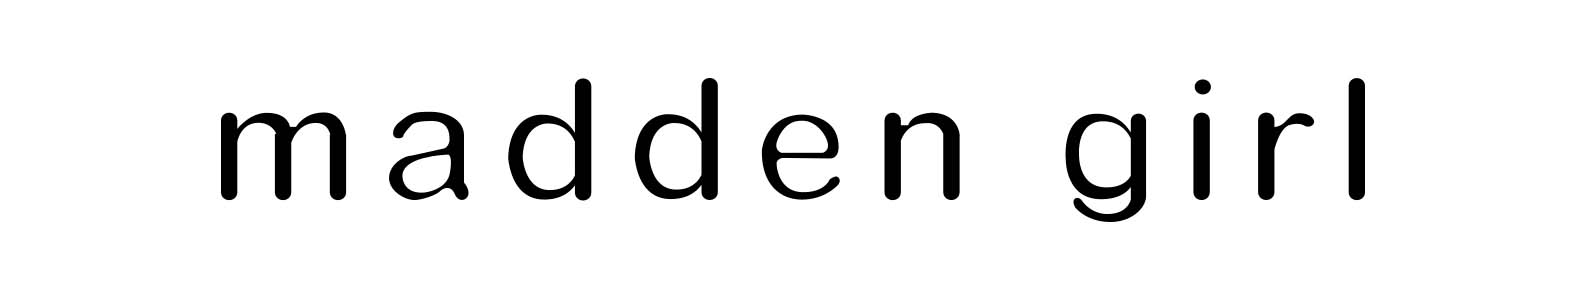 Madden Girl brand header image